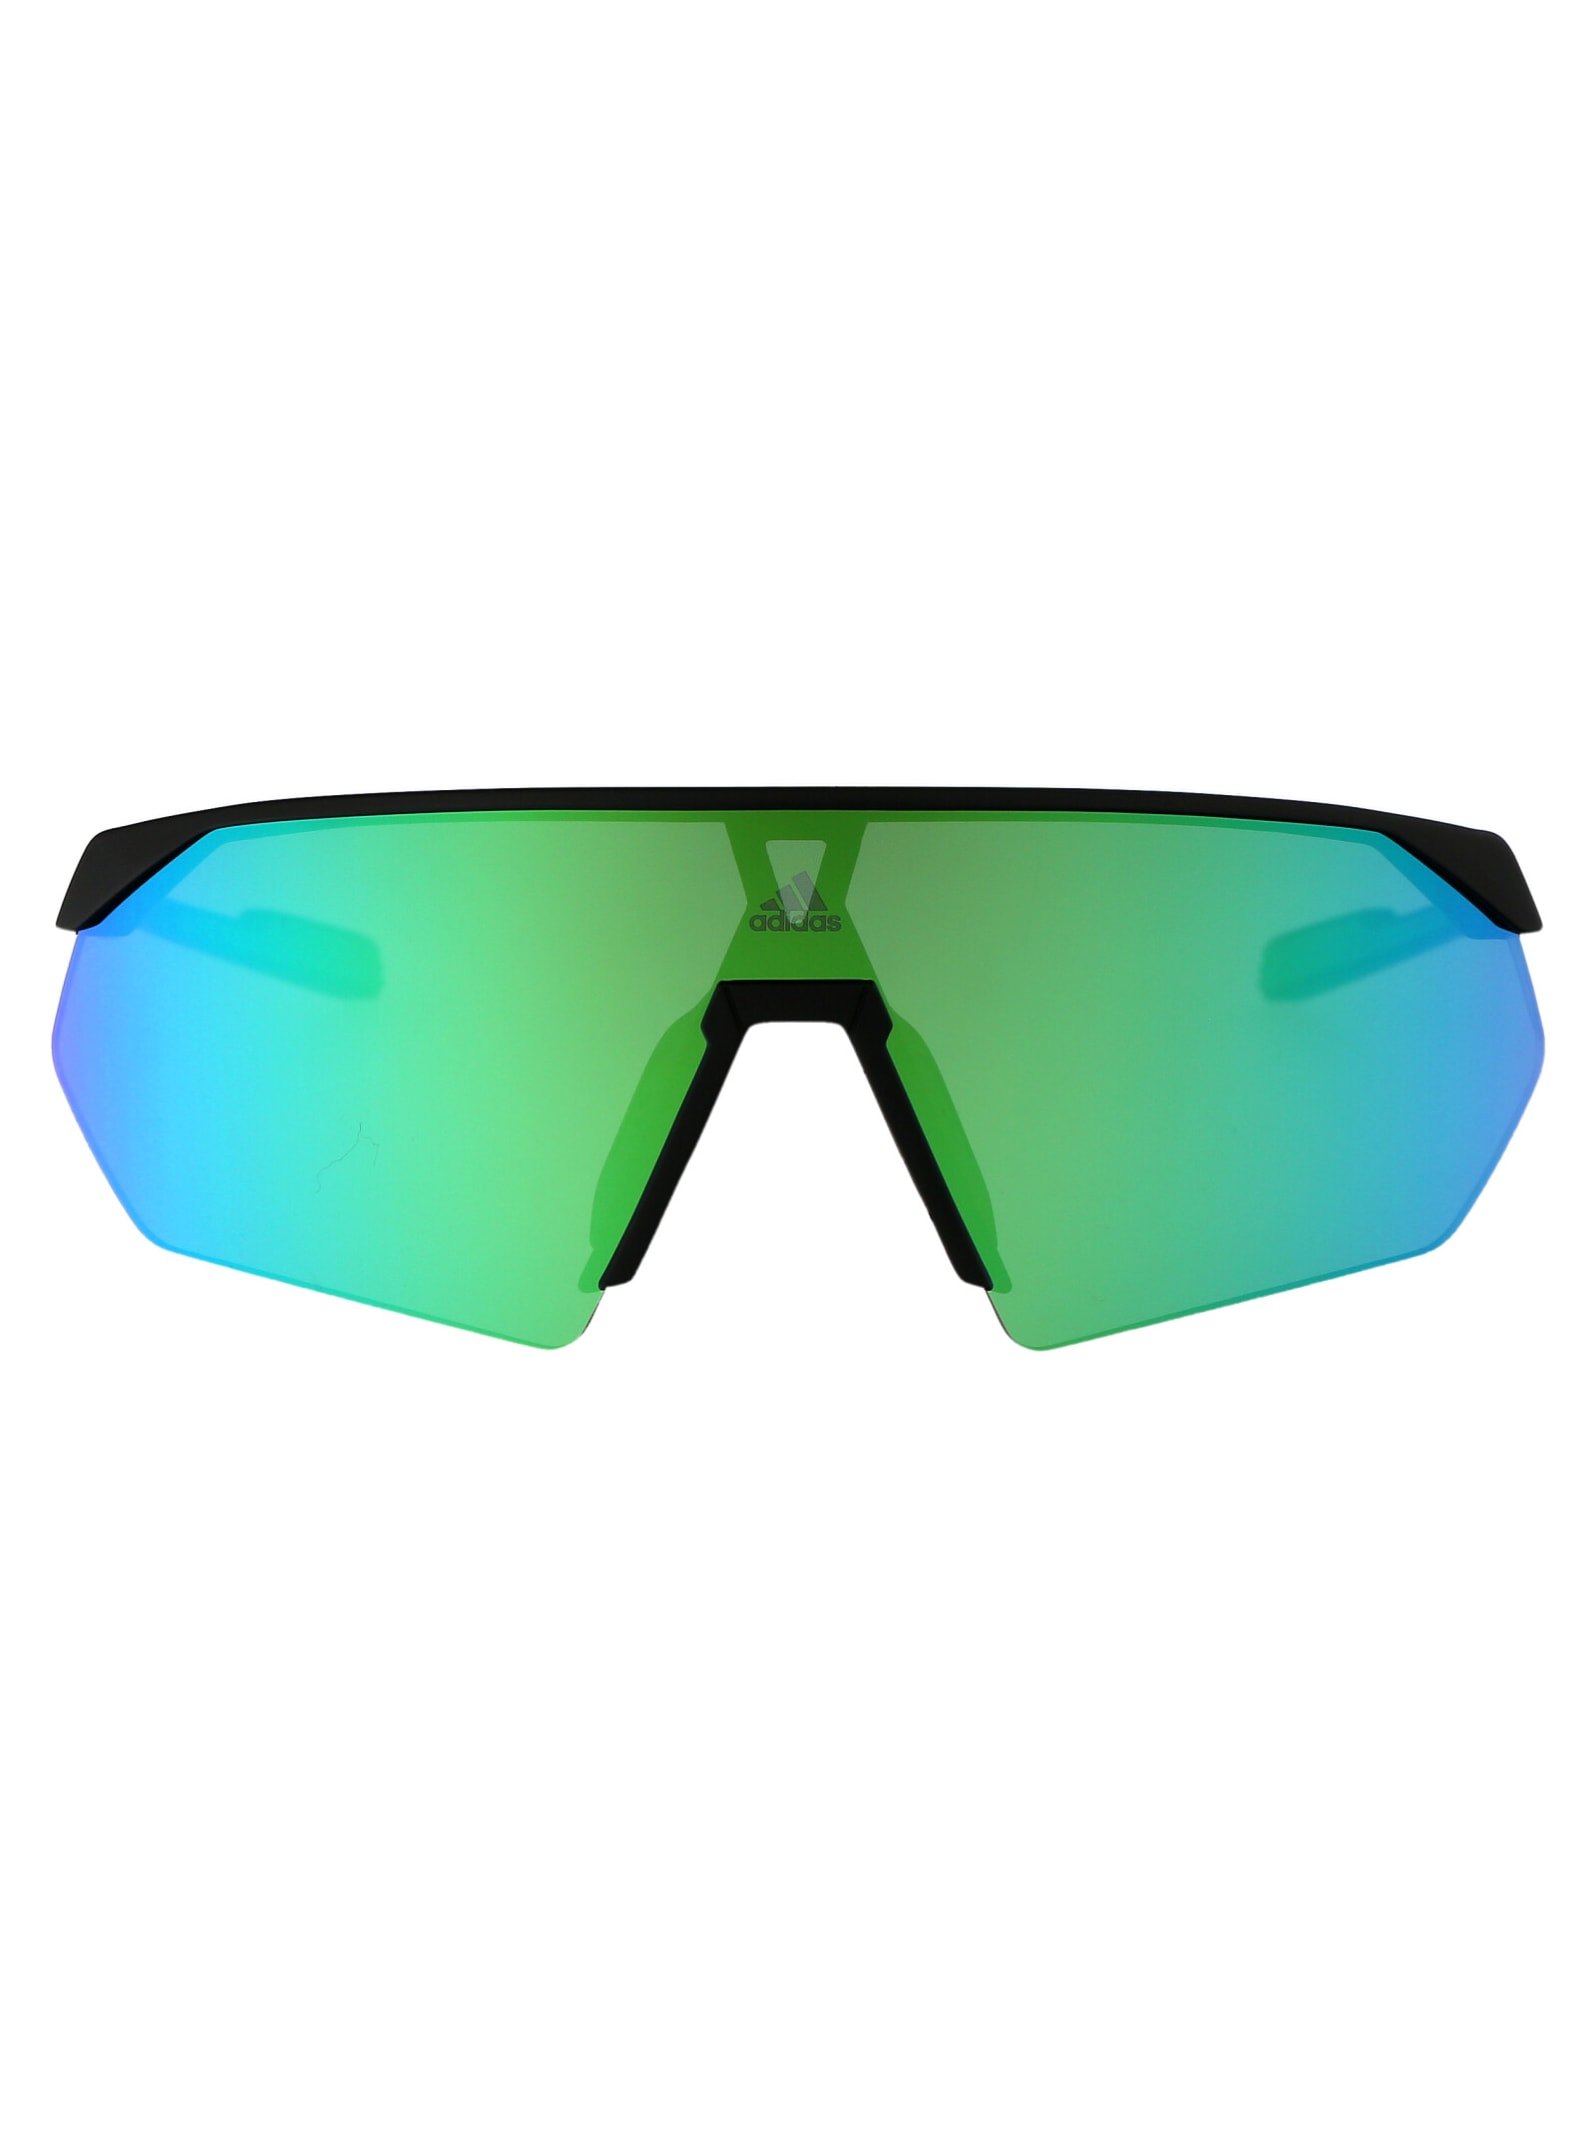 Adidas Originals Prfm Shield Sunglasses In 02q Nero Opaco/verde Specchiato